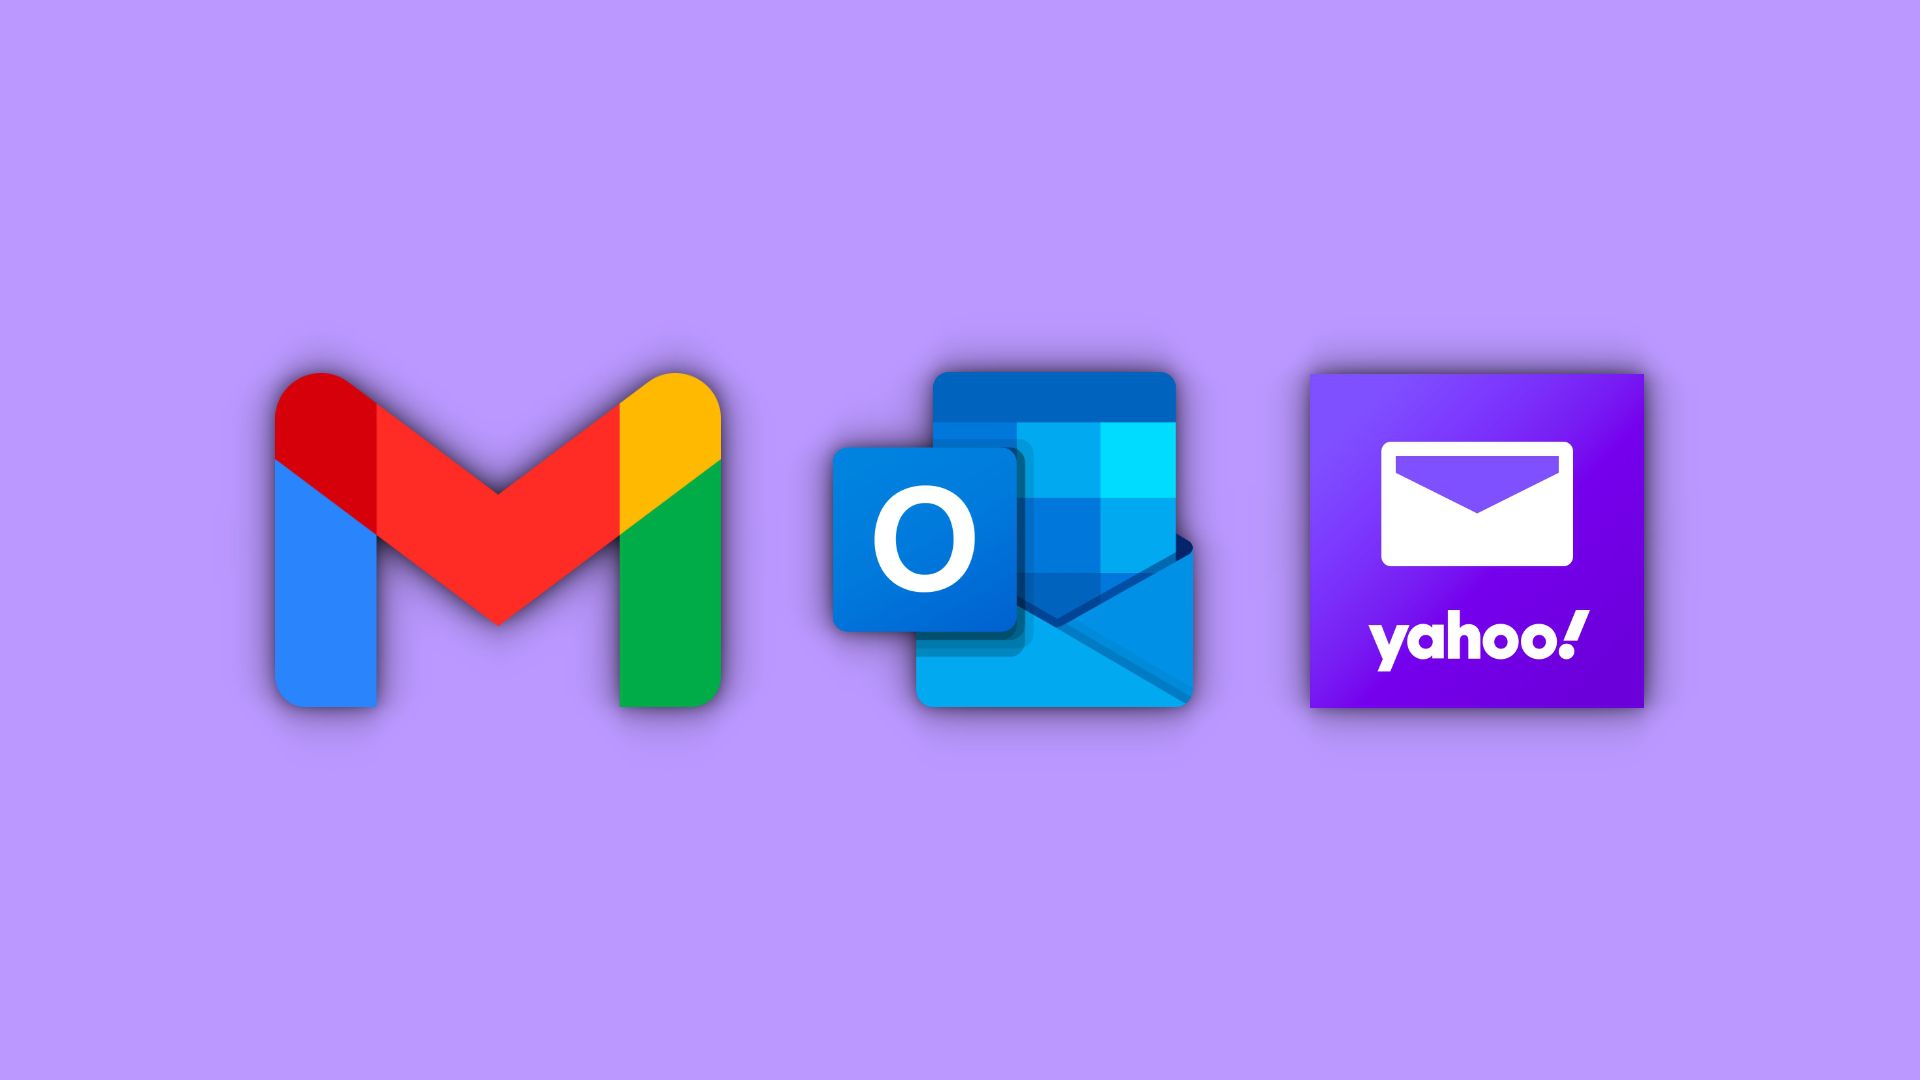 Como criar um email no Yahoo: passo a passo